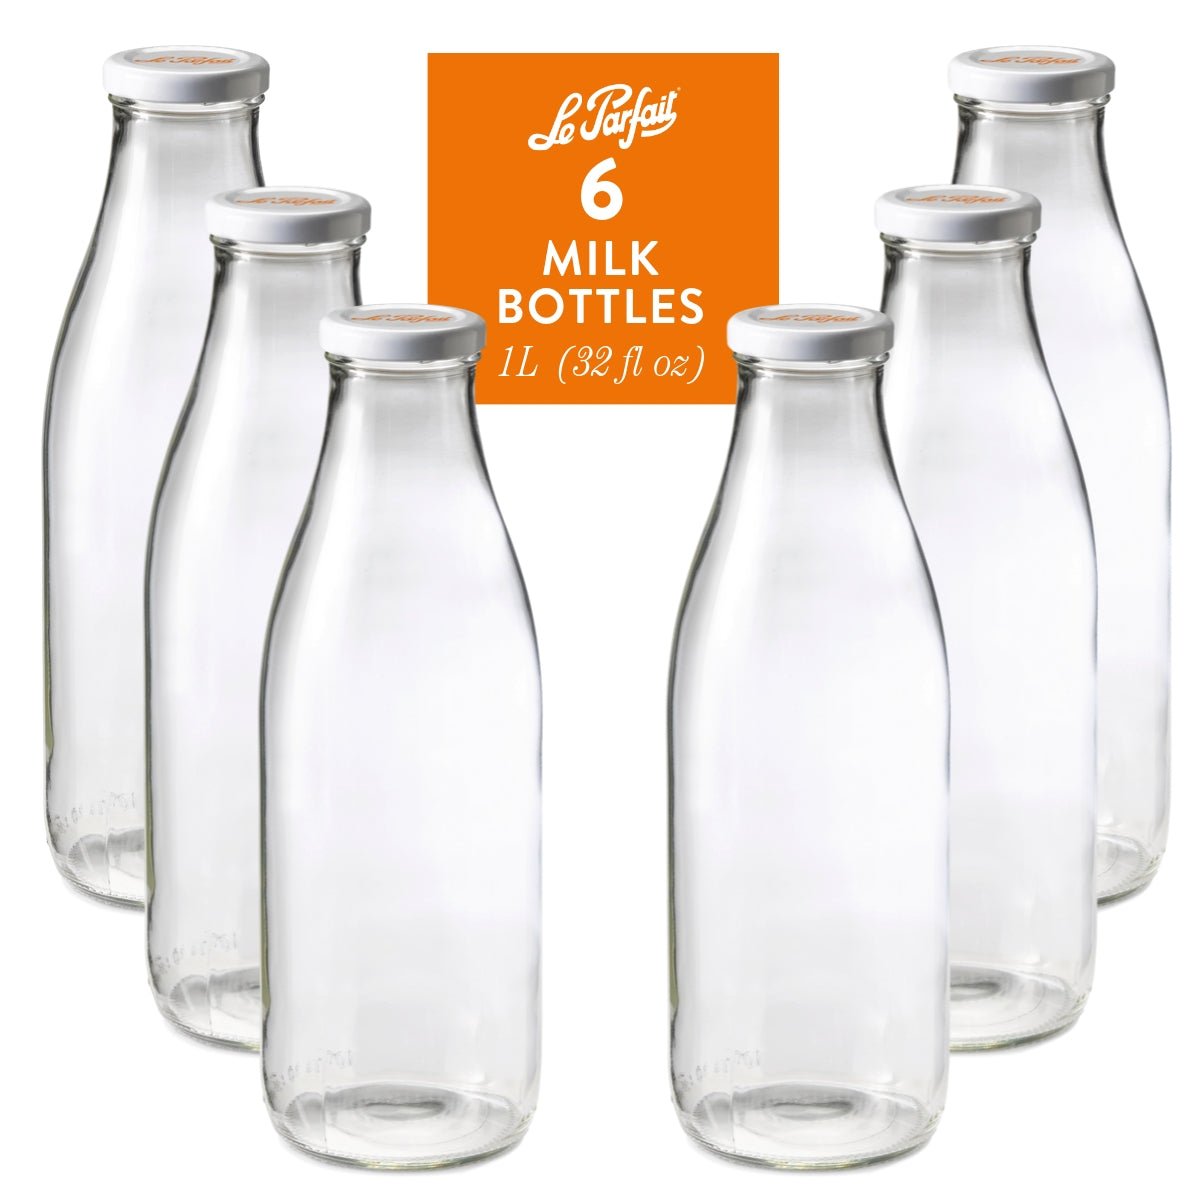 Le Parfait Bottles 500ml (16oz) Milk Cap / 6